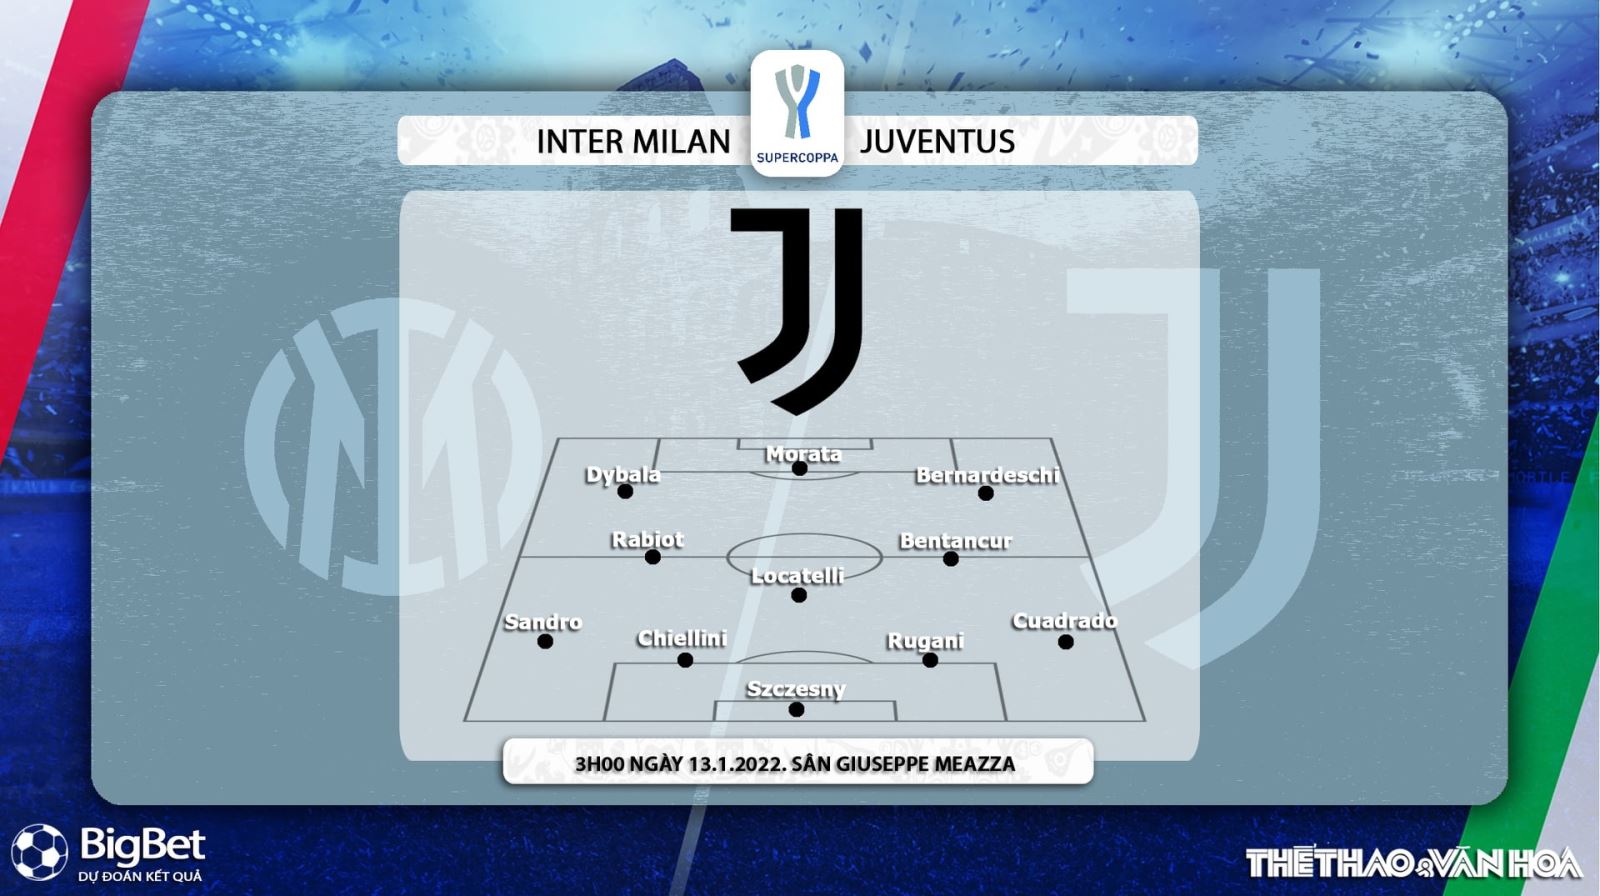 Inter Milan vs Juventus, nhận định kết quả, nhận định bóng đá Inter Milan vs Juventus, nhận định bóng đá, Inter Milan, Juventus, keo nha cai, dự đoán bóng đá, Siêu Cup bóng đá Italy